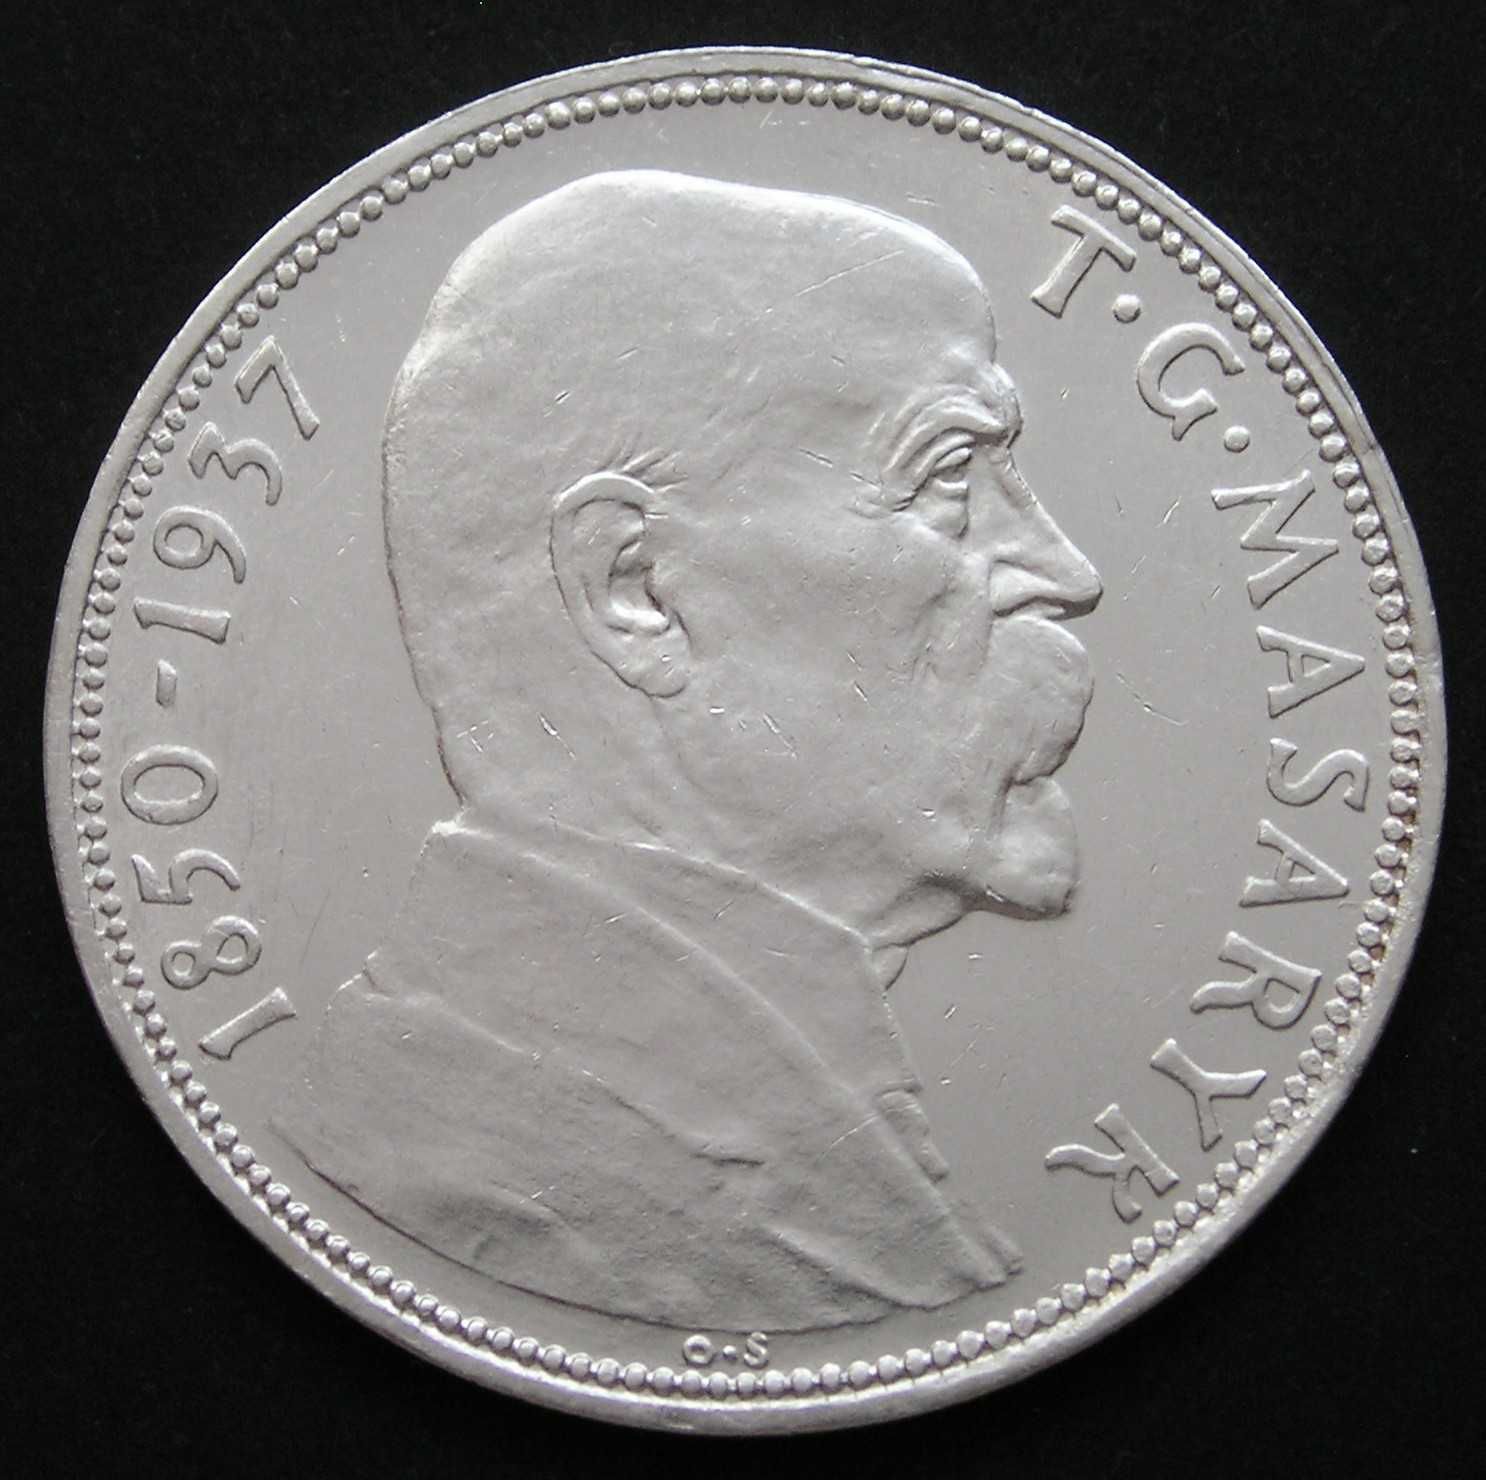 Czechosłowacja 20 koron 1937 - Tomas Masaryk - srebro